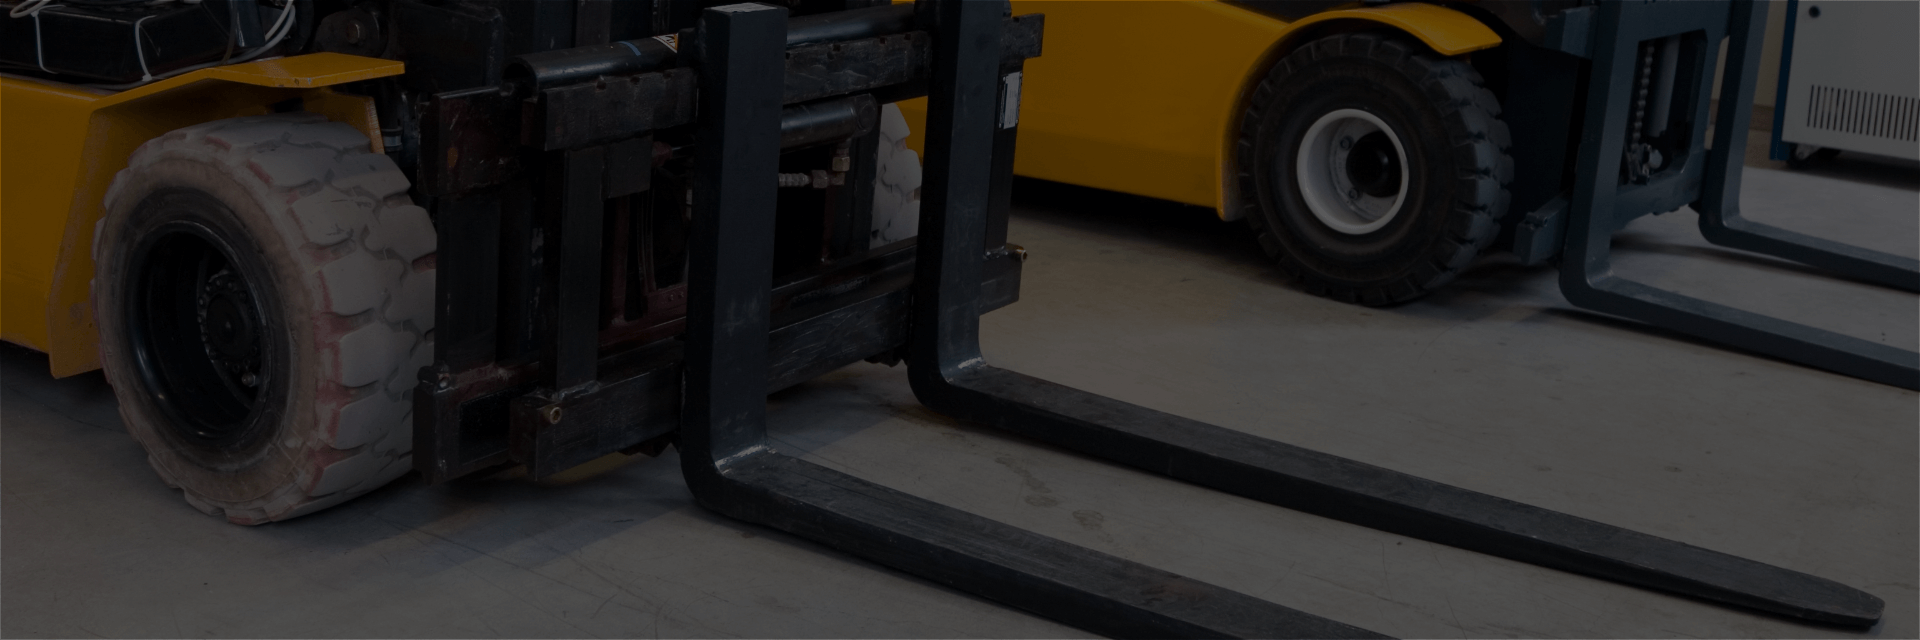 forklift warehouse equipment